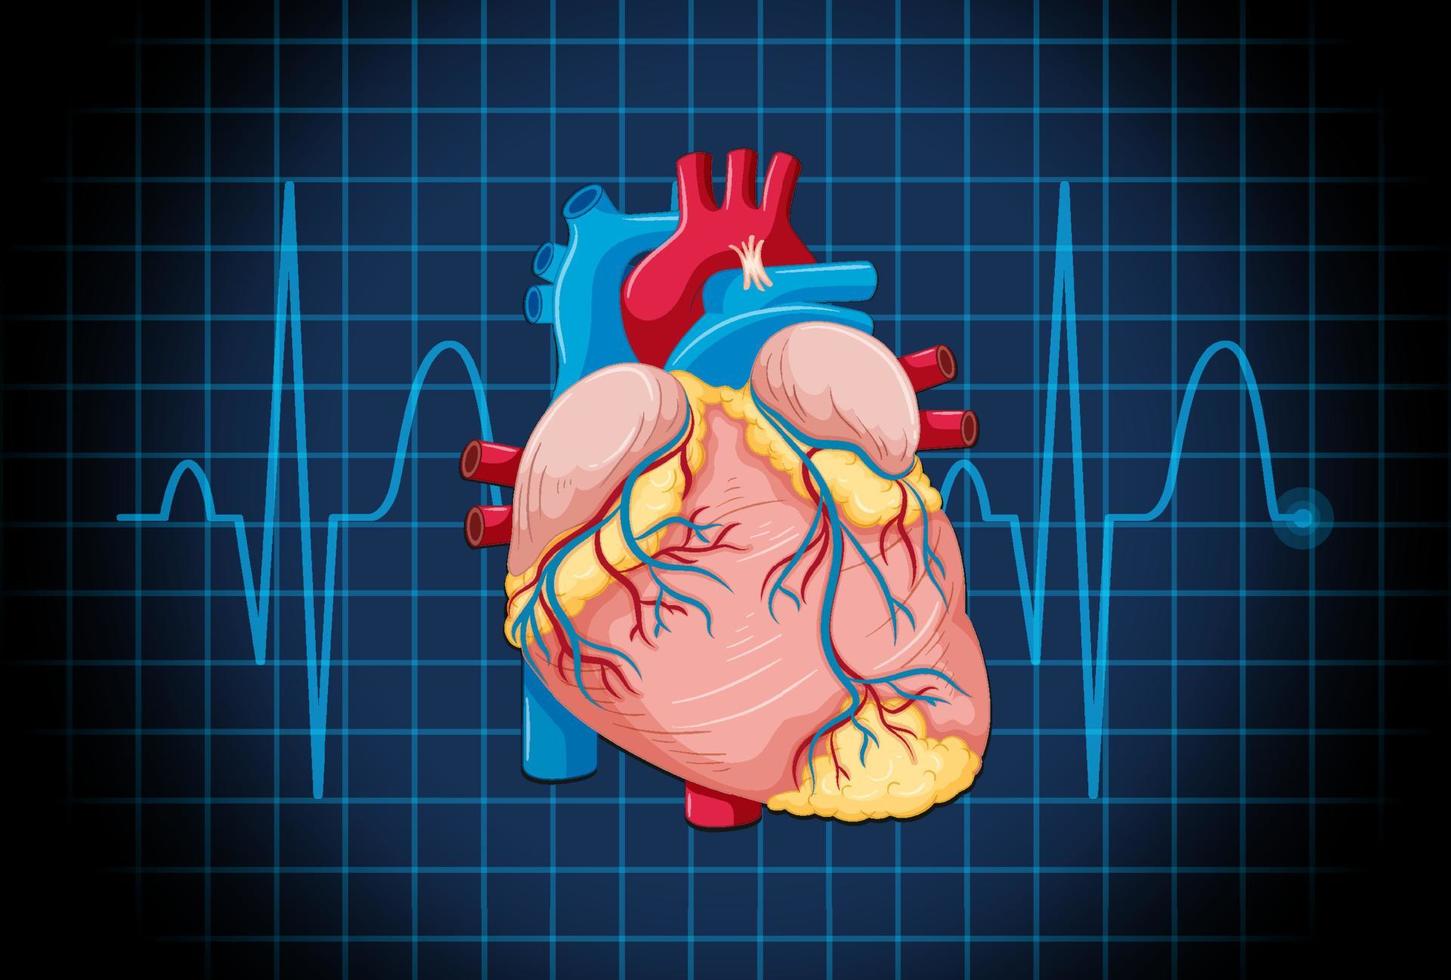 menselijk inwendig orgaan met hart vector